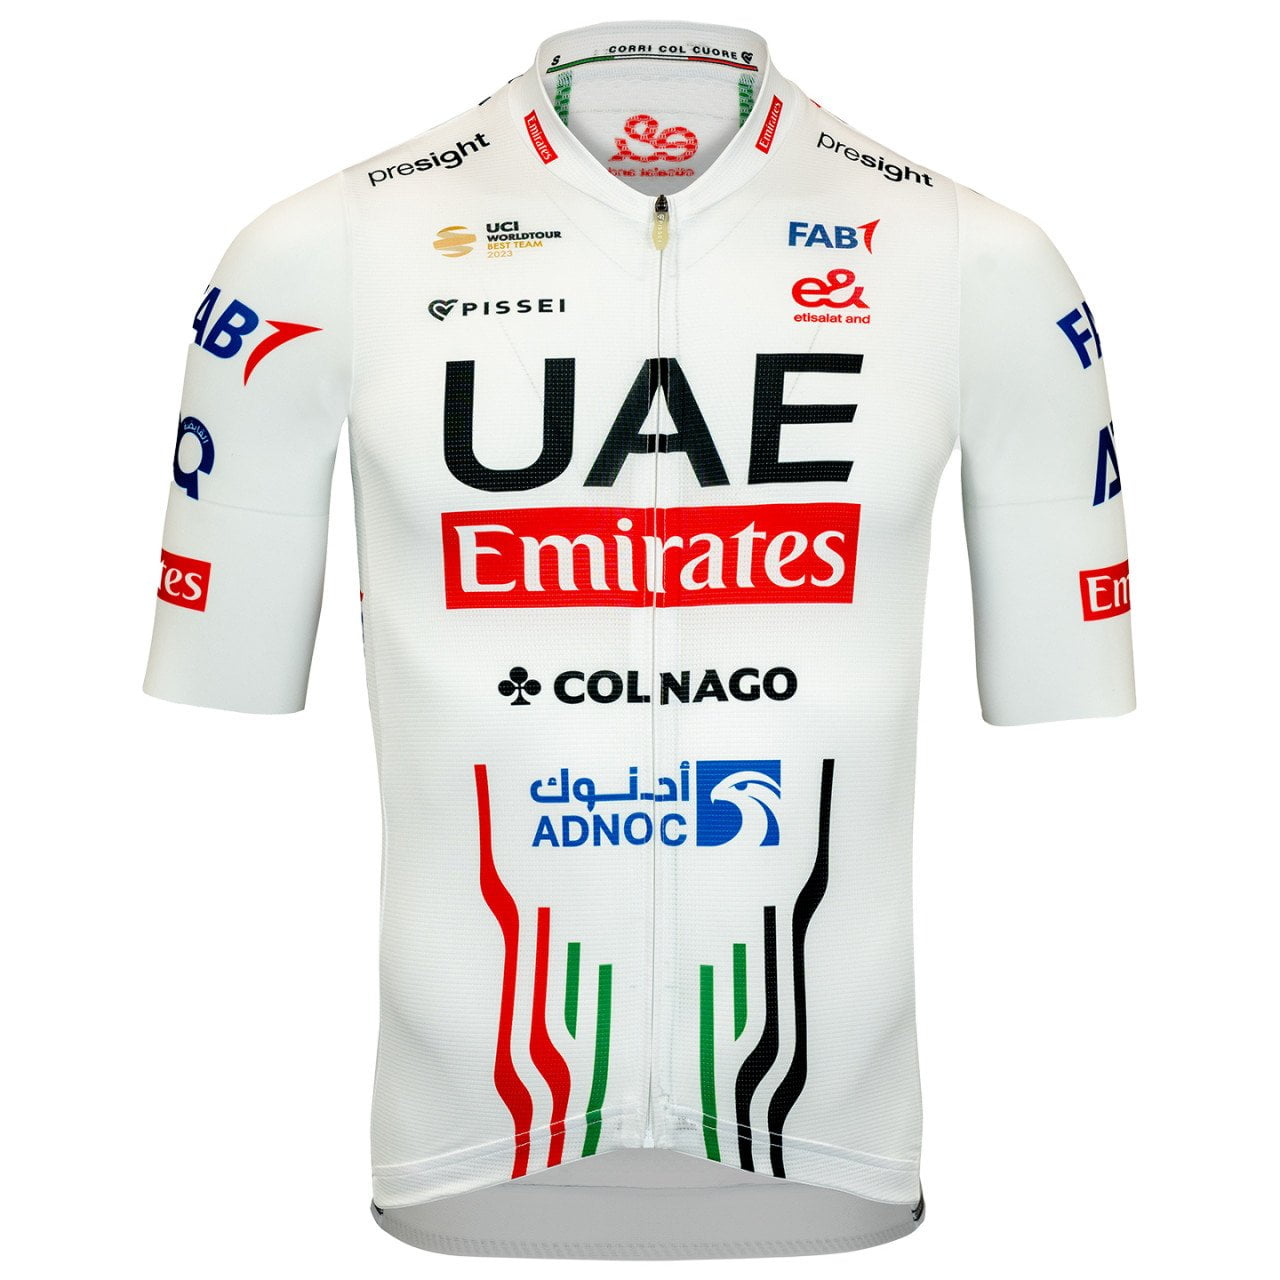 UAE EMIRATES 2024 Set (2 pieces)